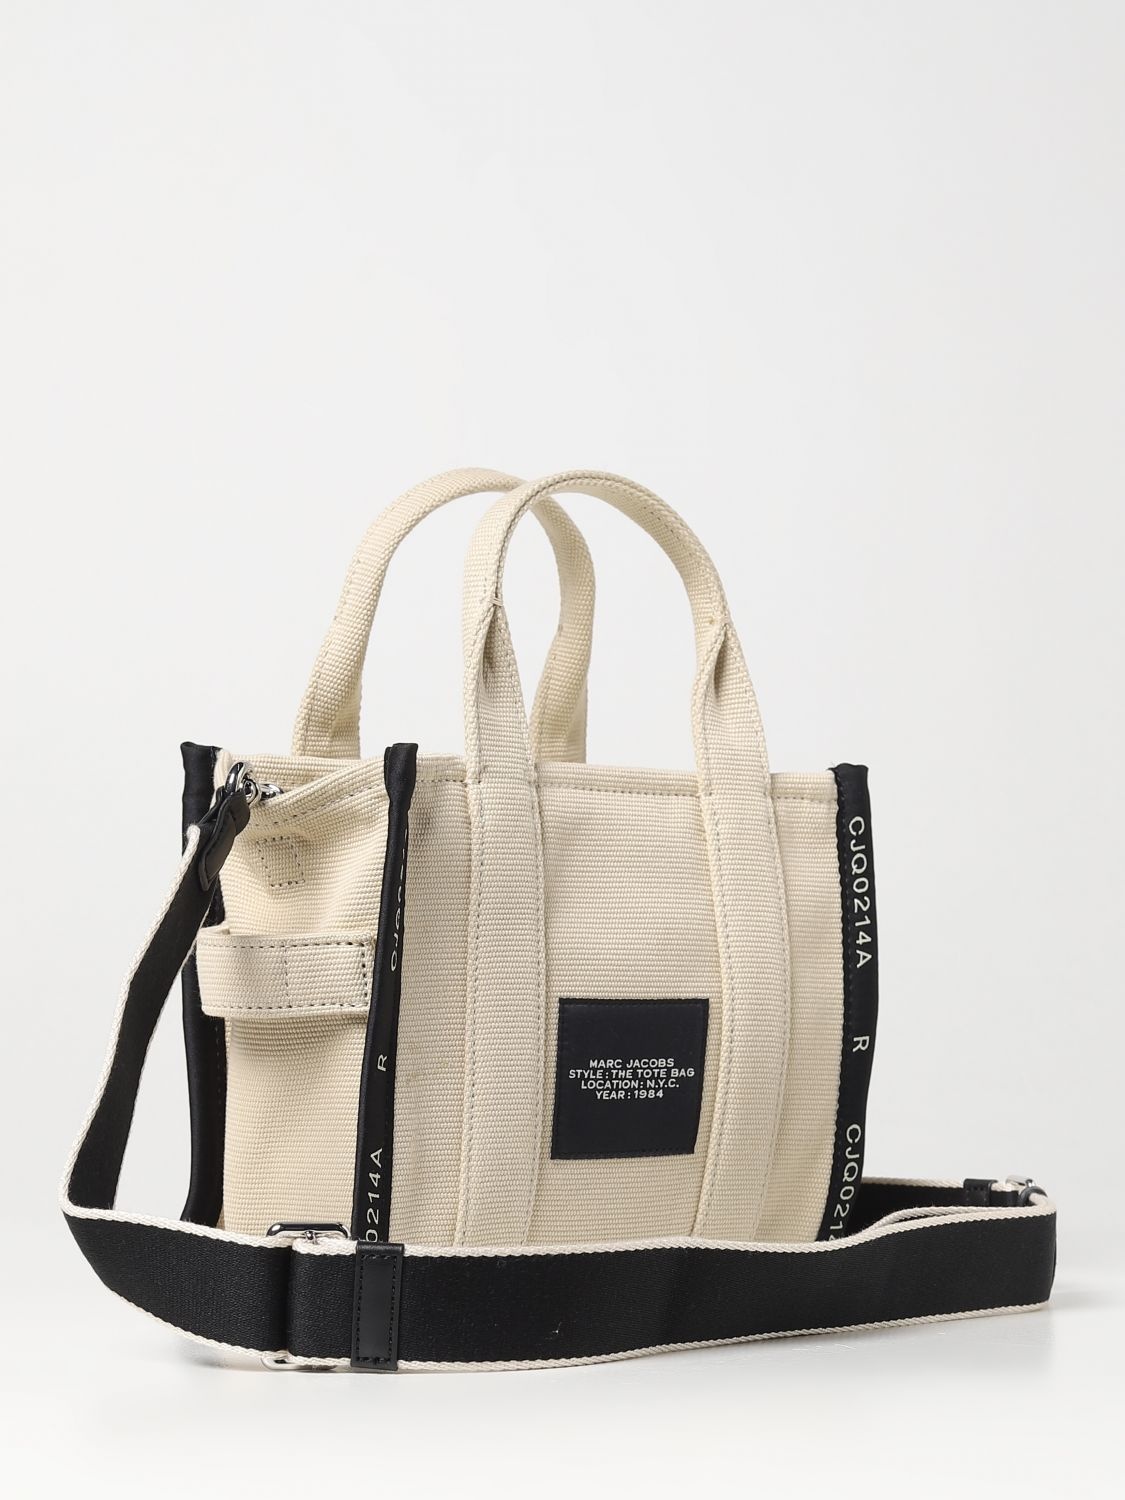 Marc Jacobs handbag for woman - 2